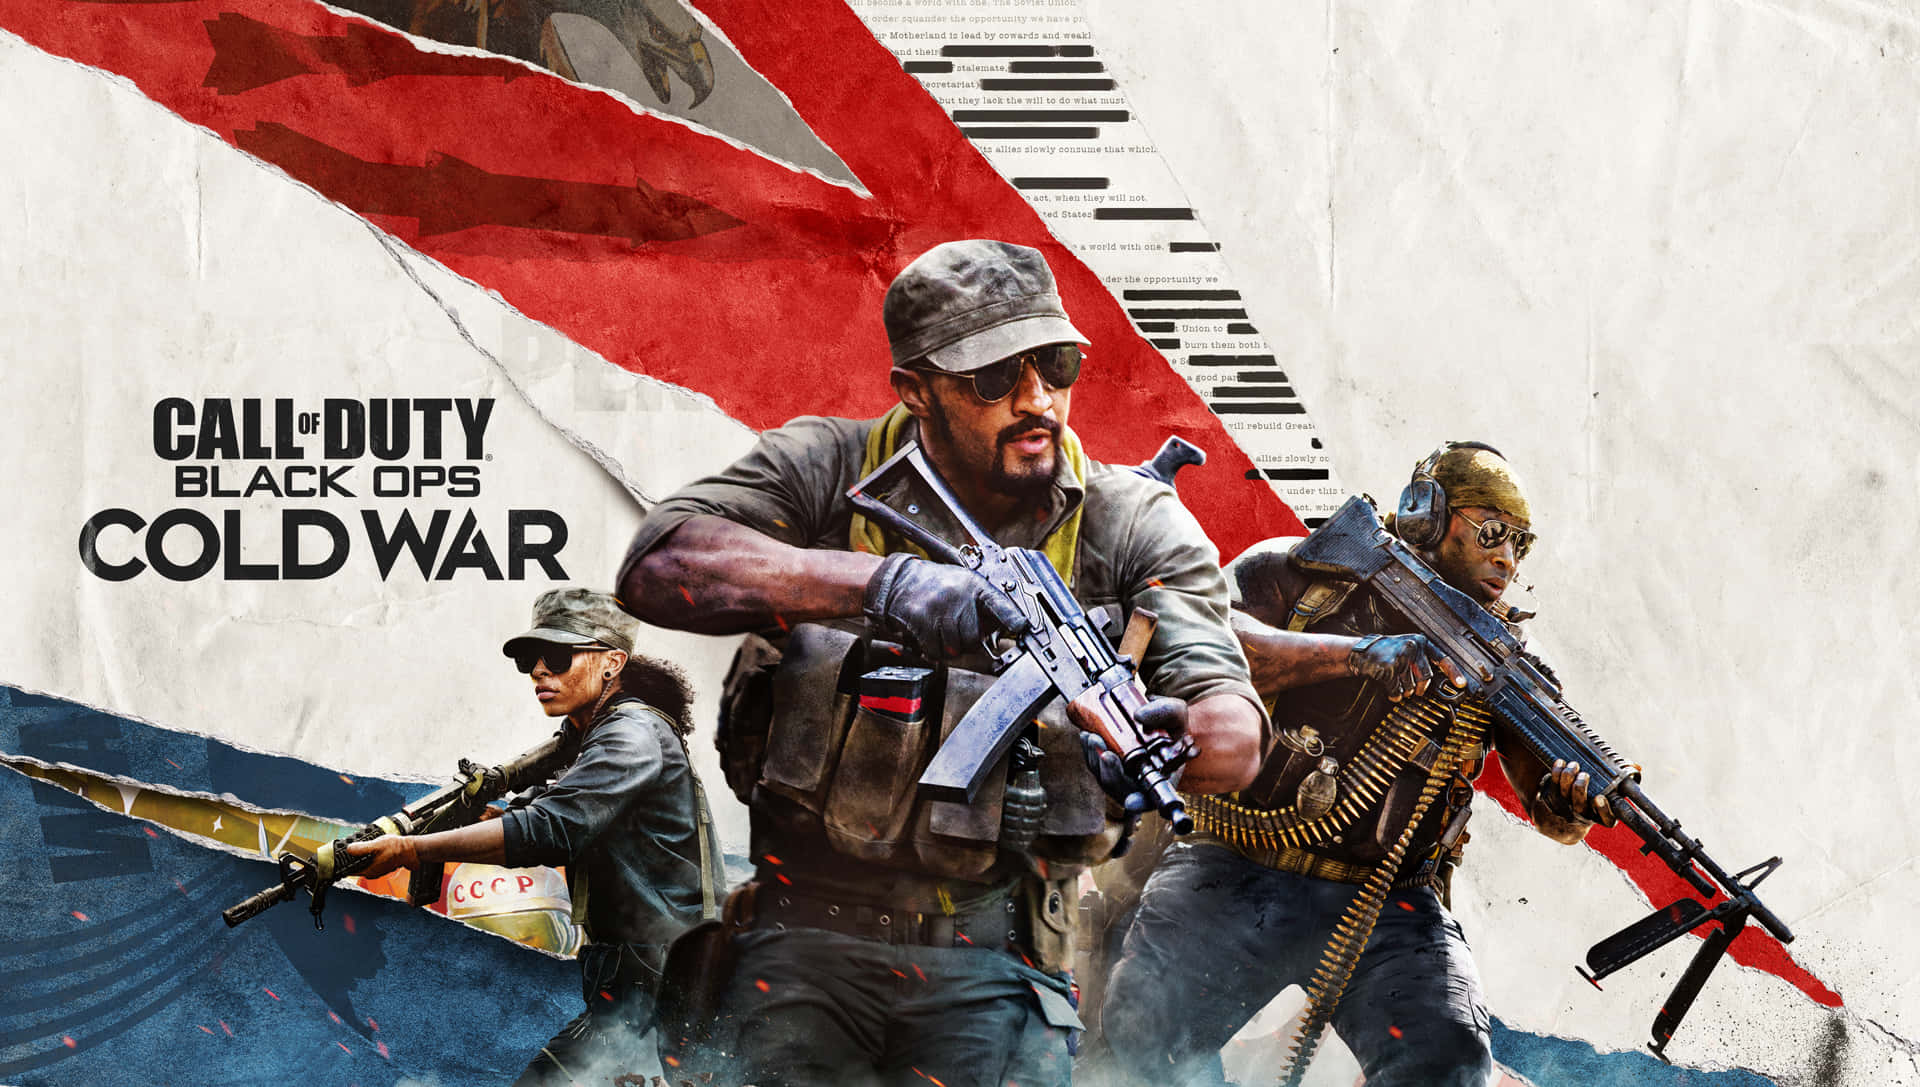 Upplevden Intensiva Nya Konflikten I Det Kalla Kriget I Call Of Duty: Black Ops Cold War.